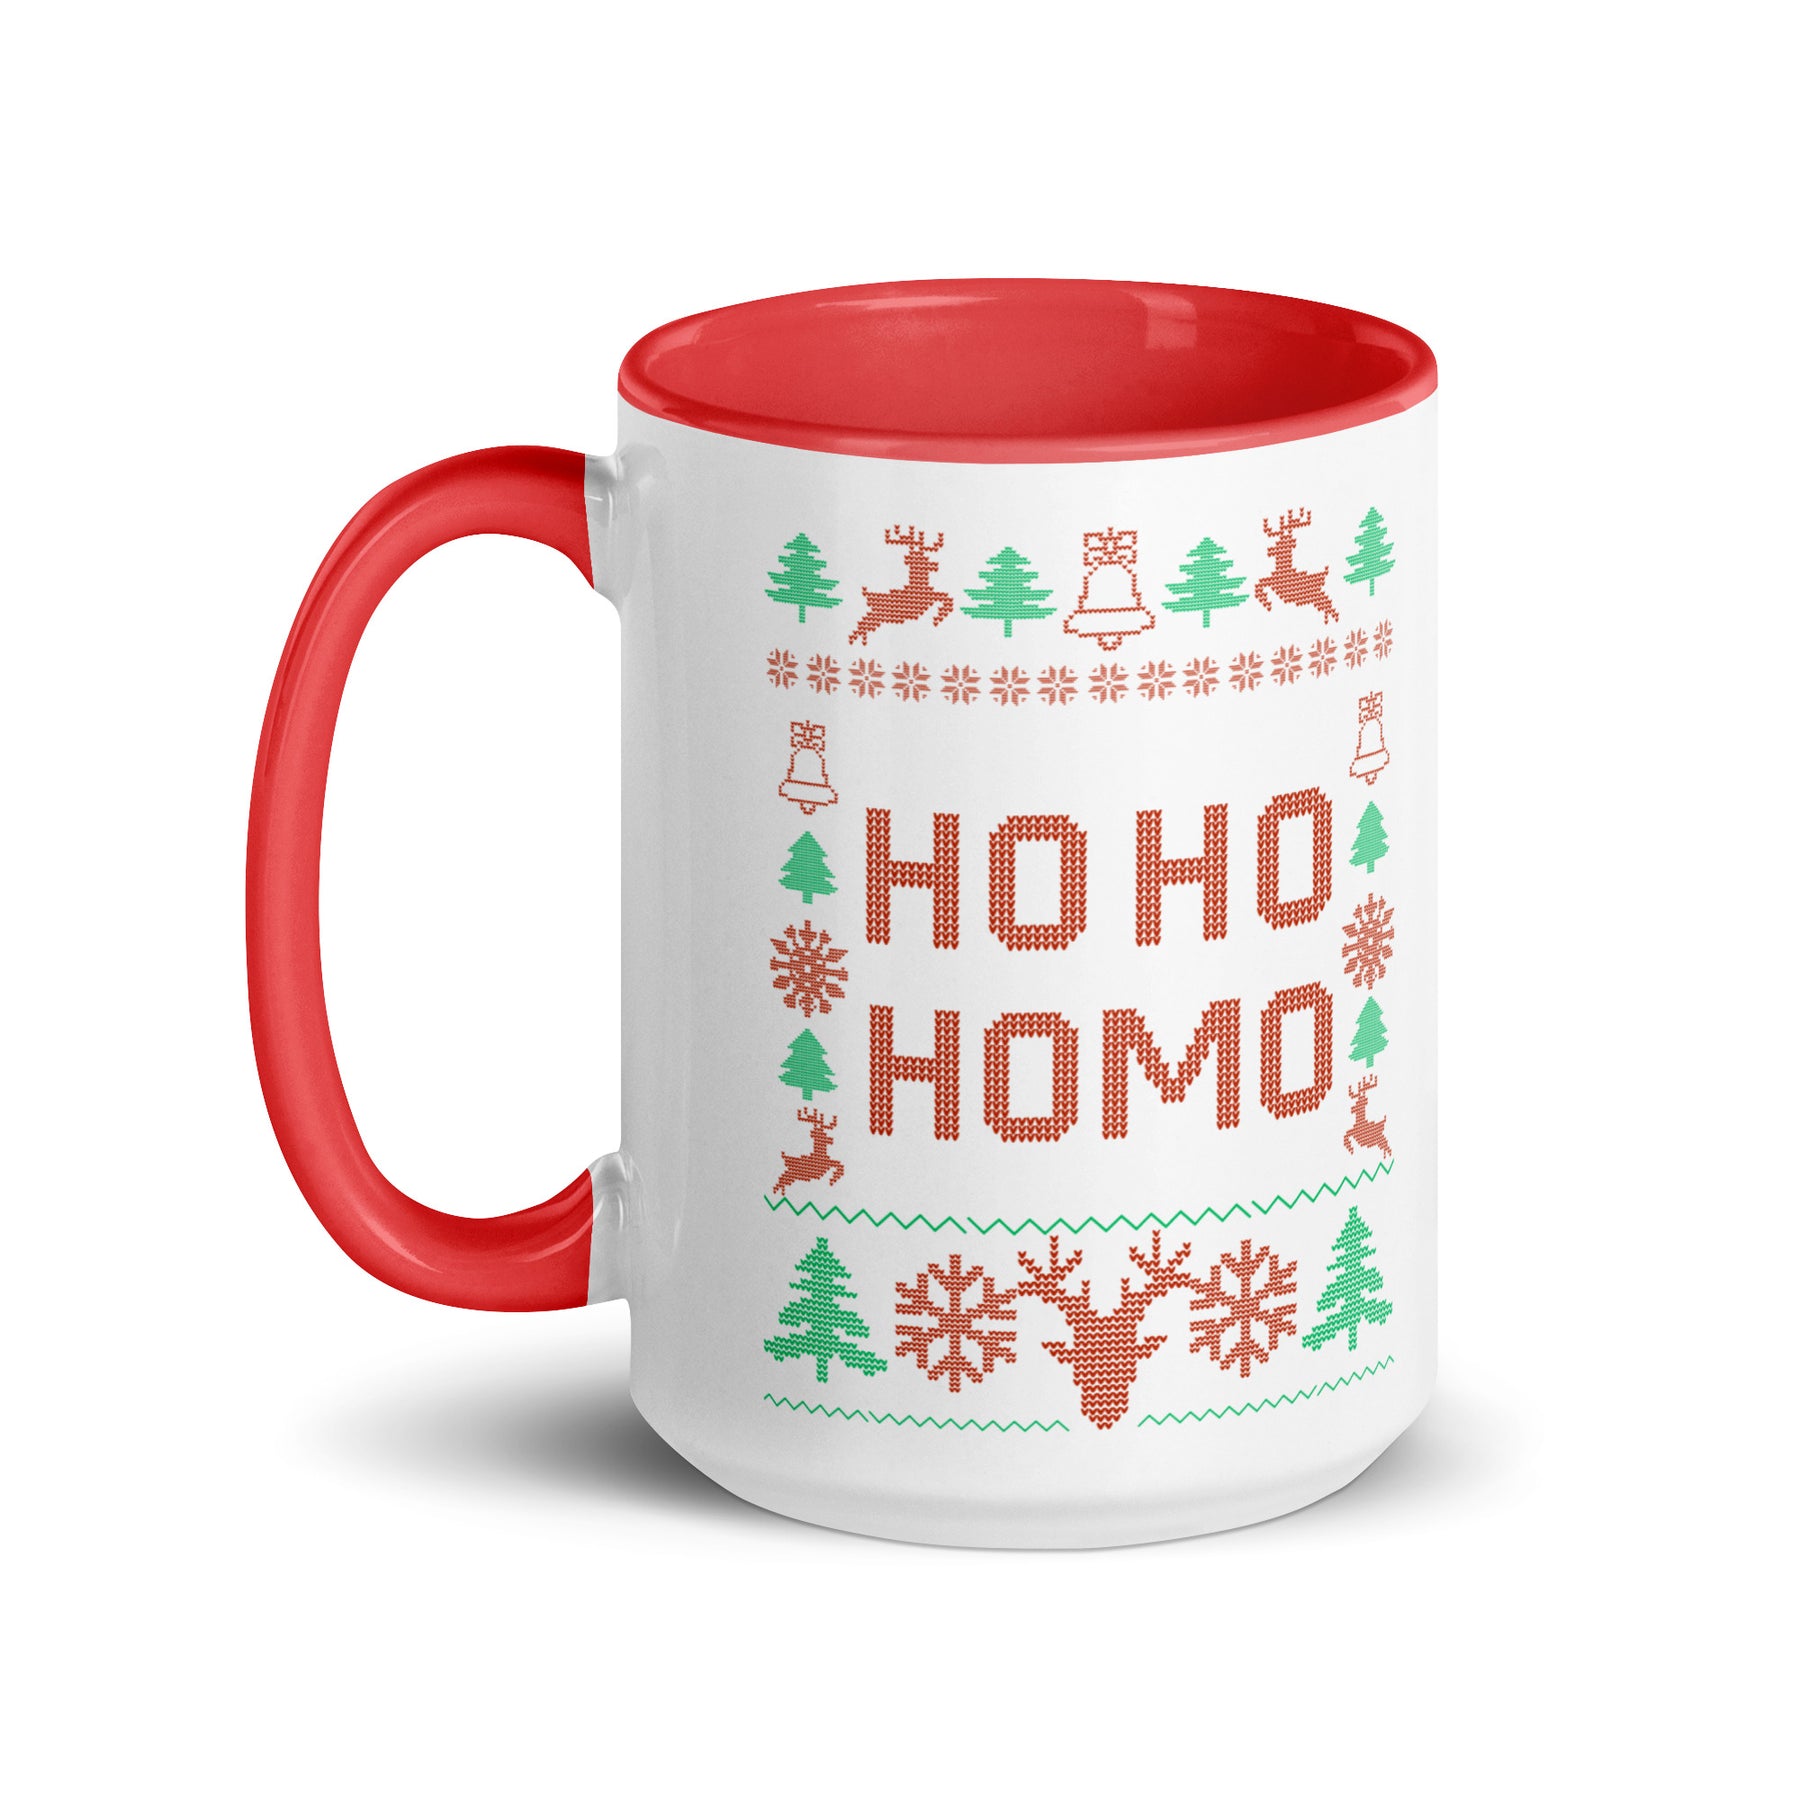 Ho Ho Homo Mug